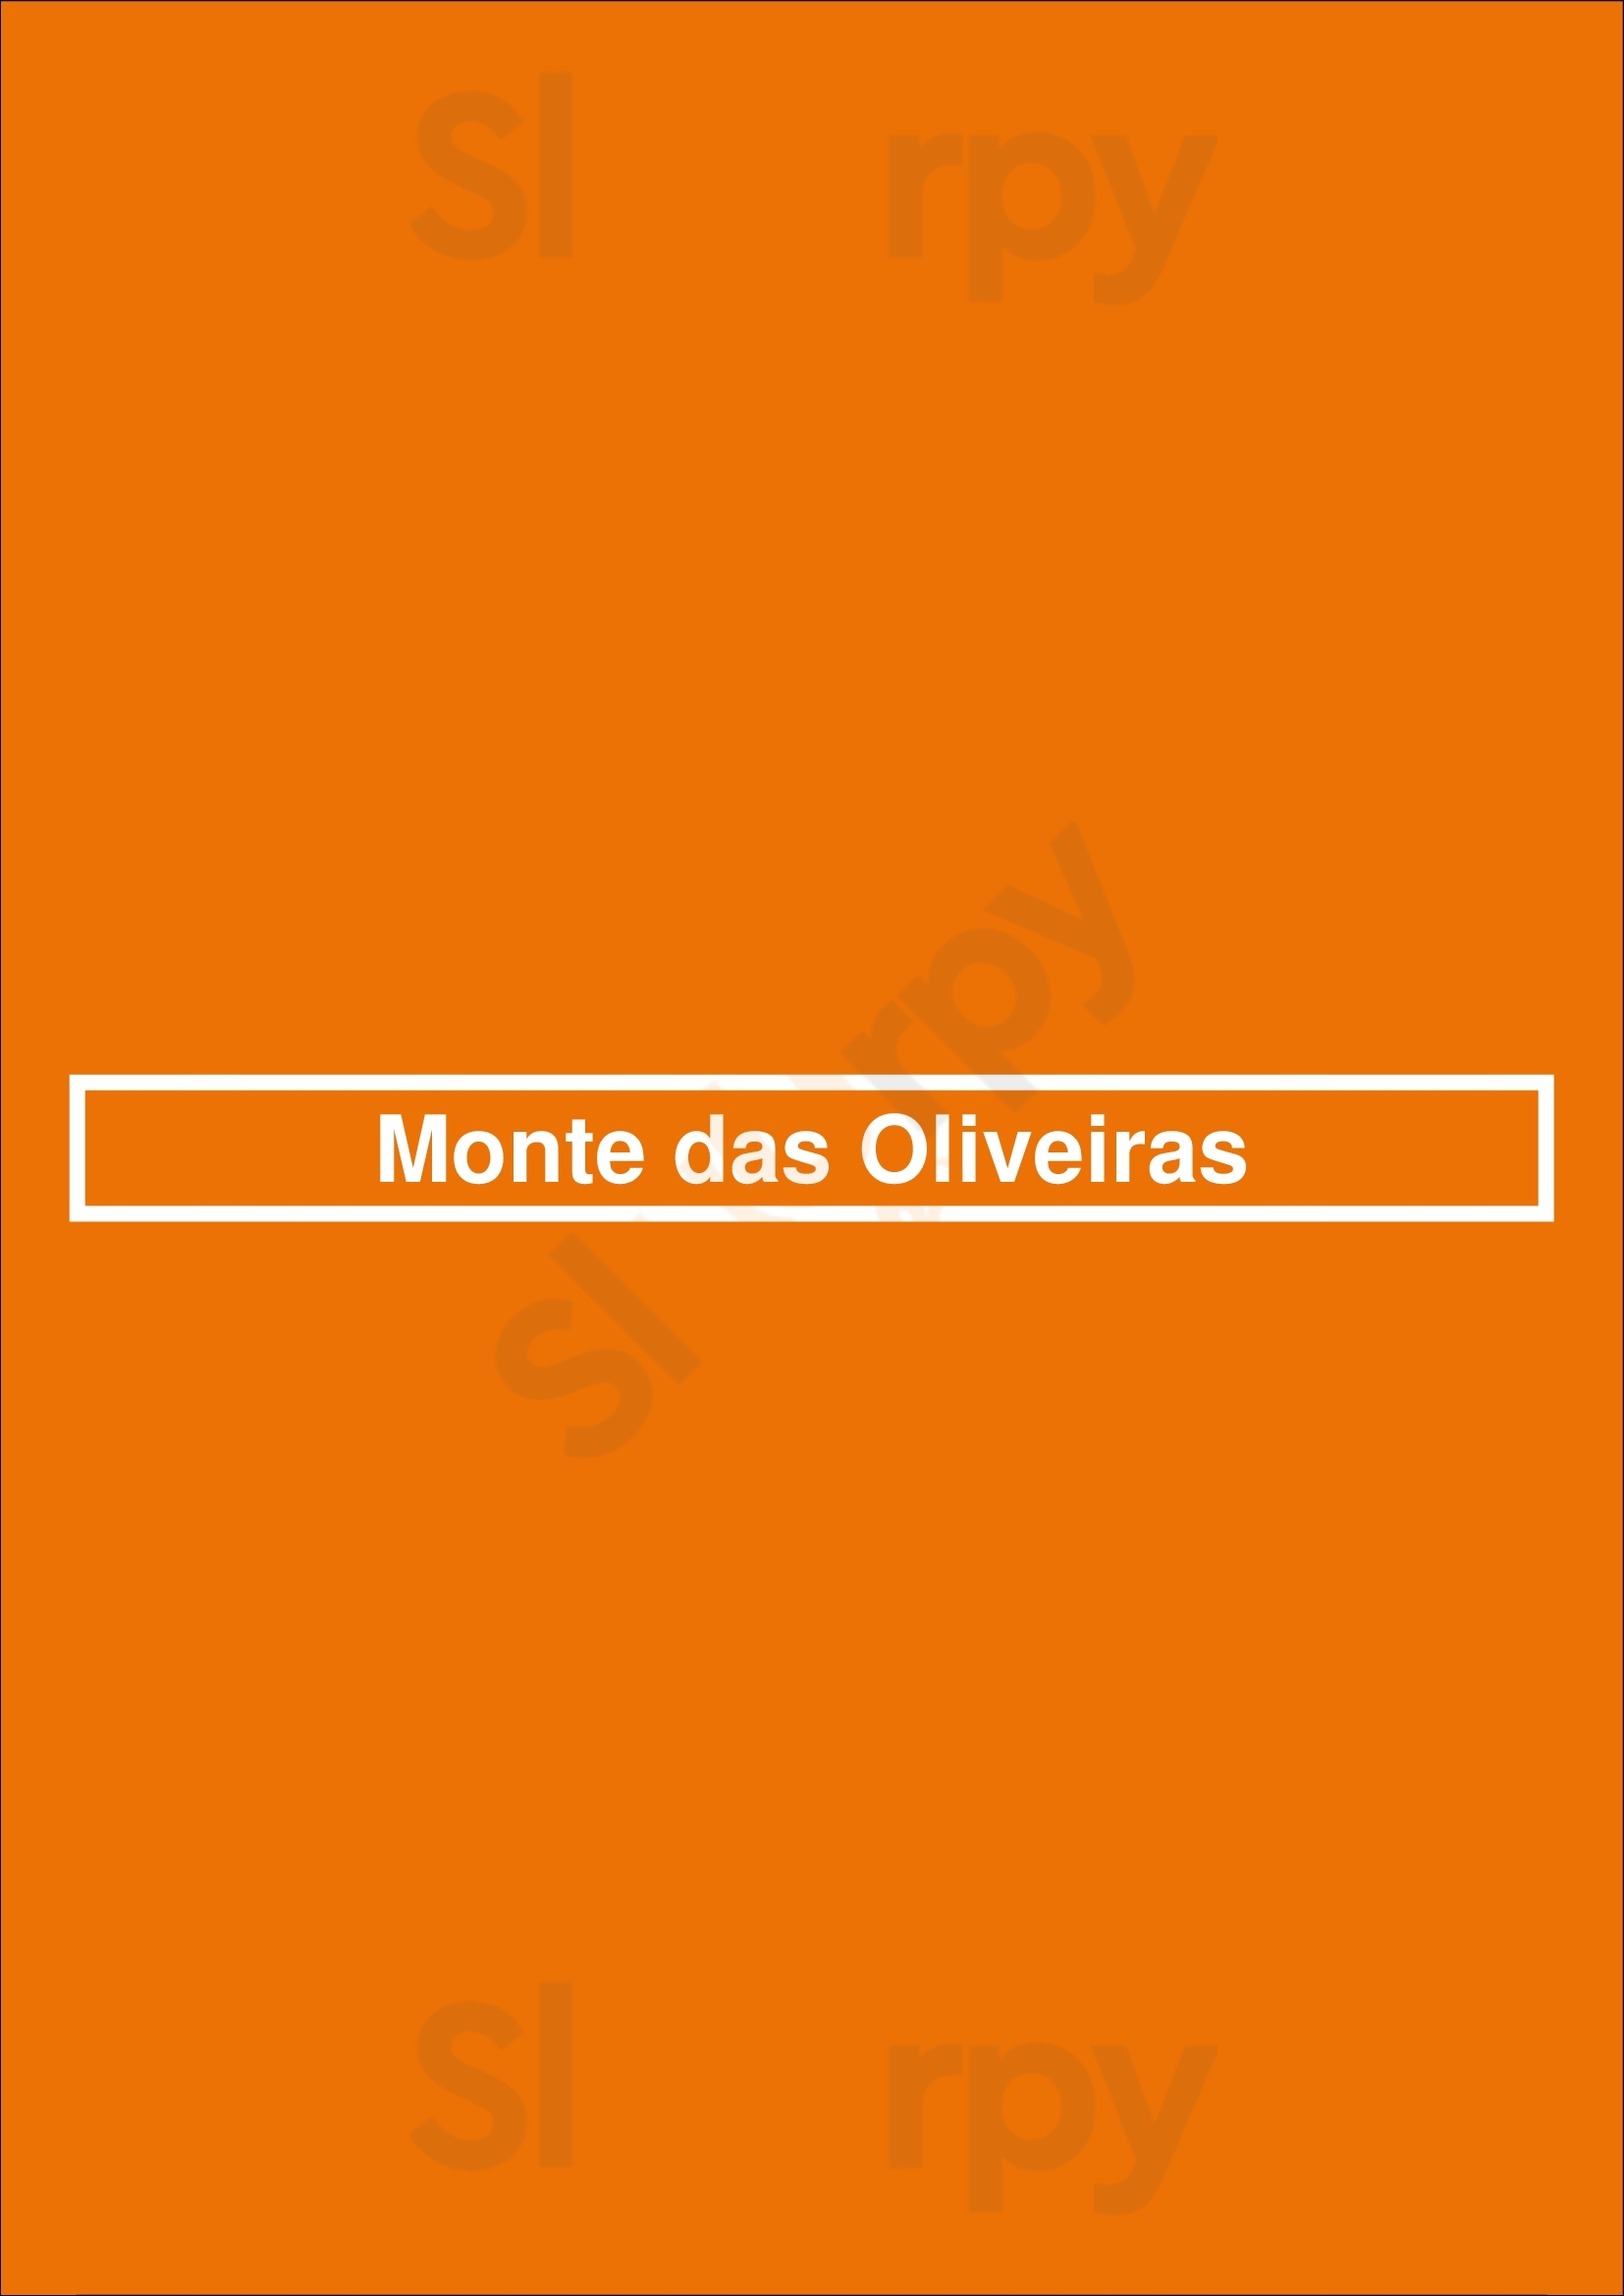 Monte Das Oliveiras Santa Maria da Feira Menu - 1